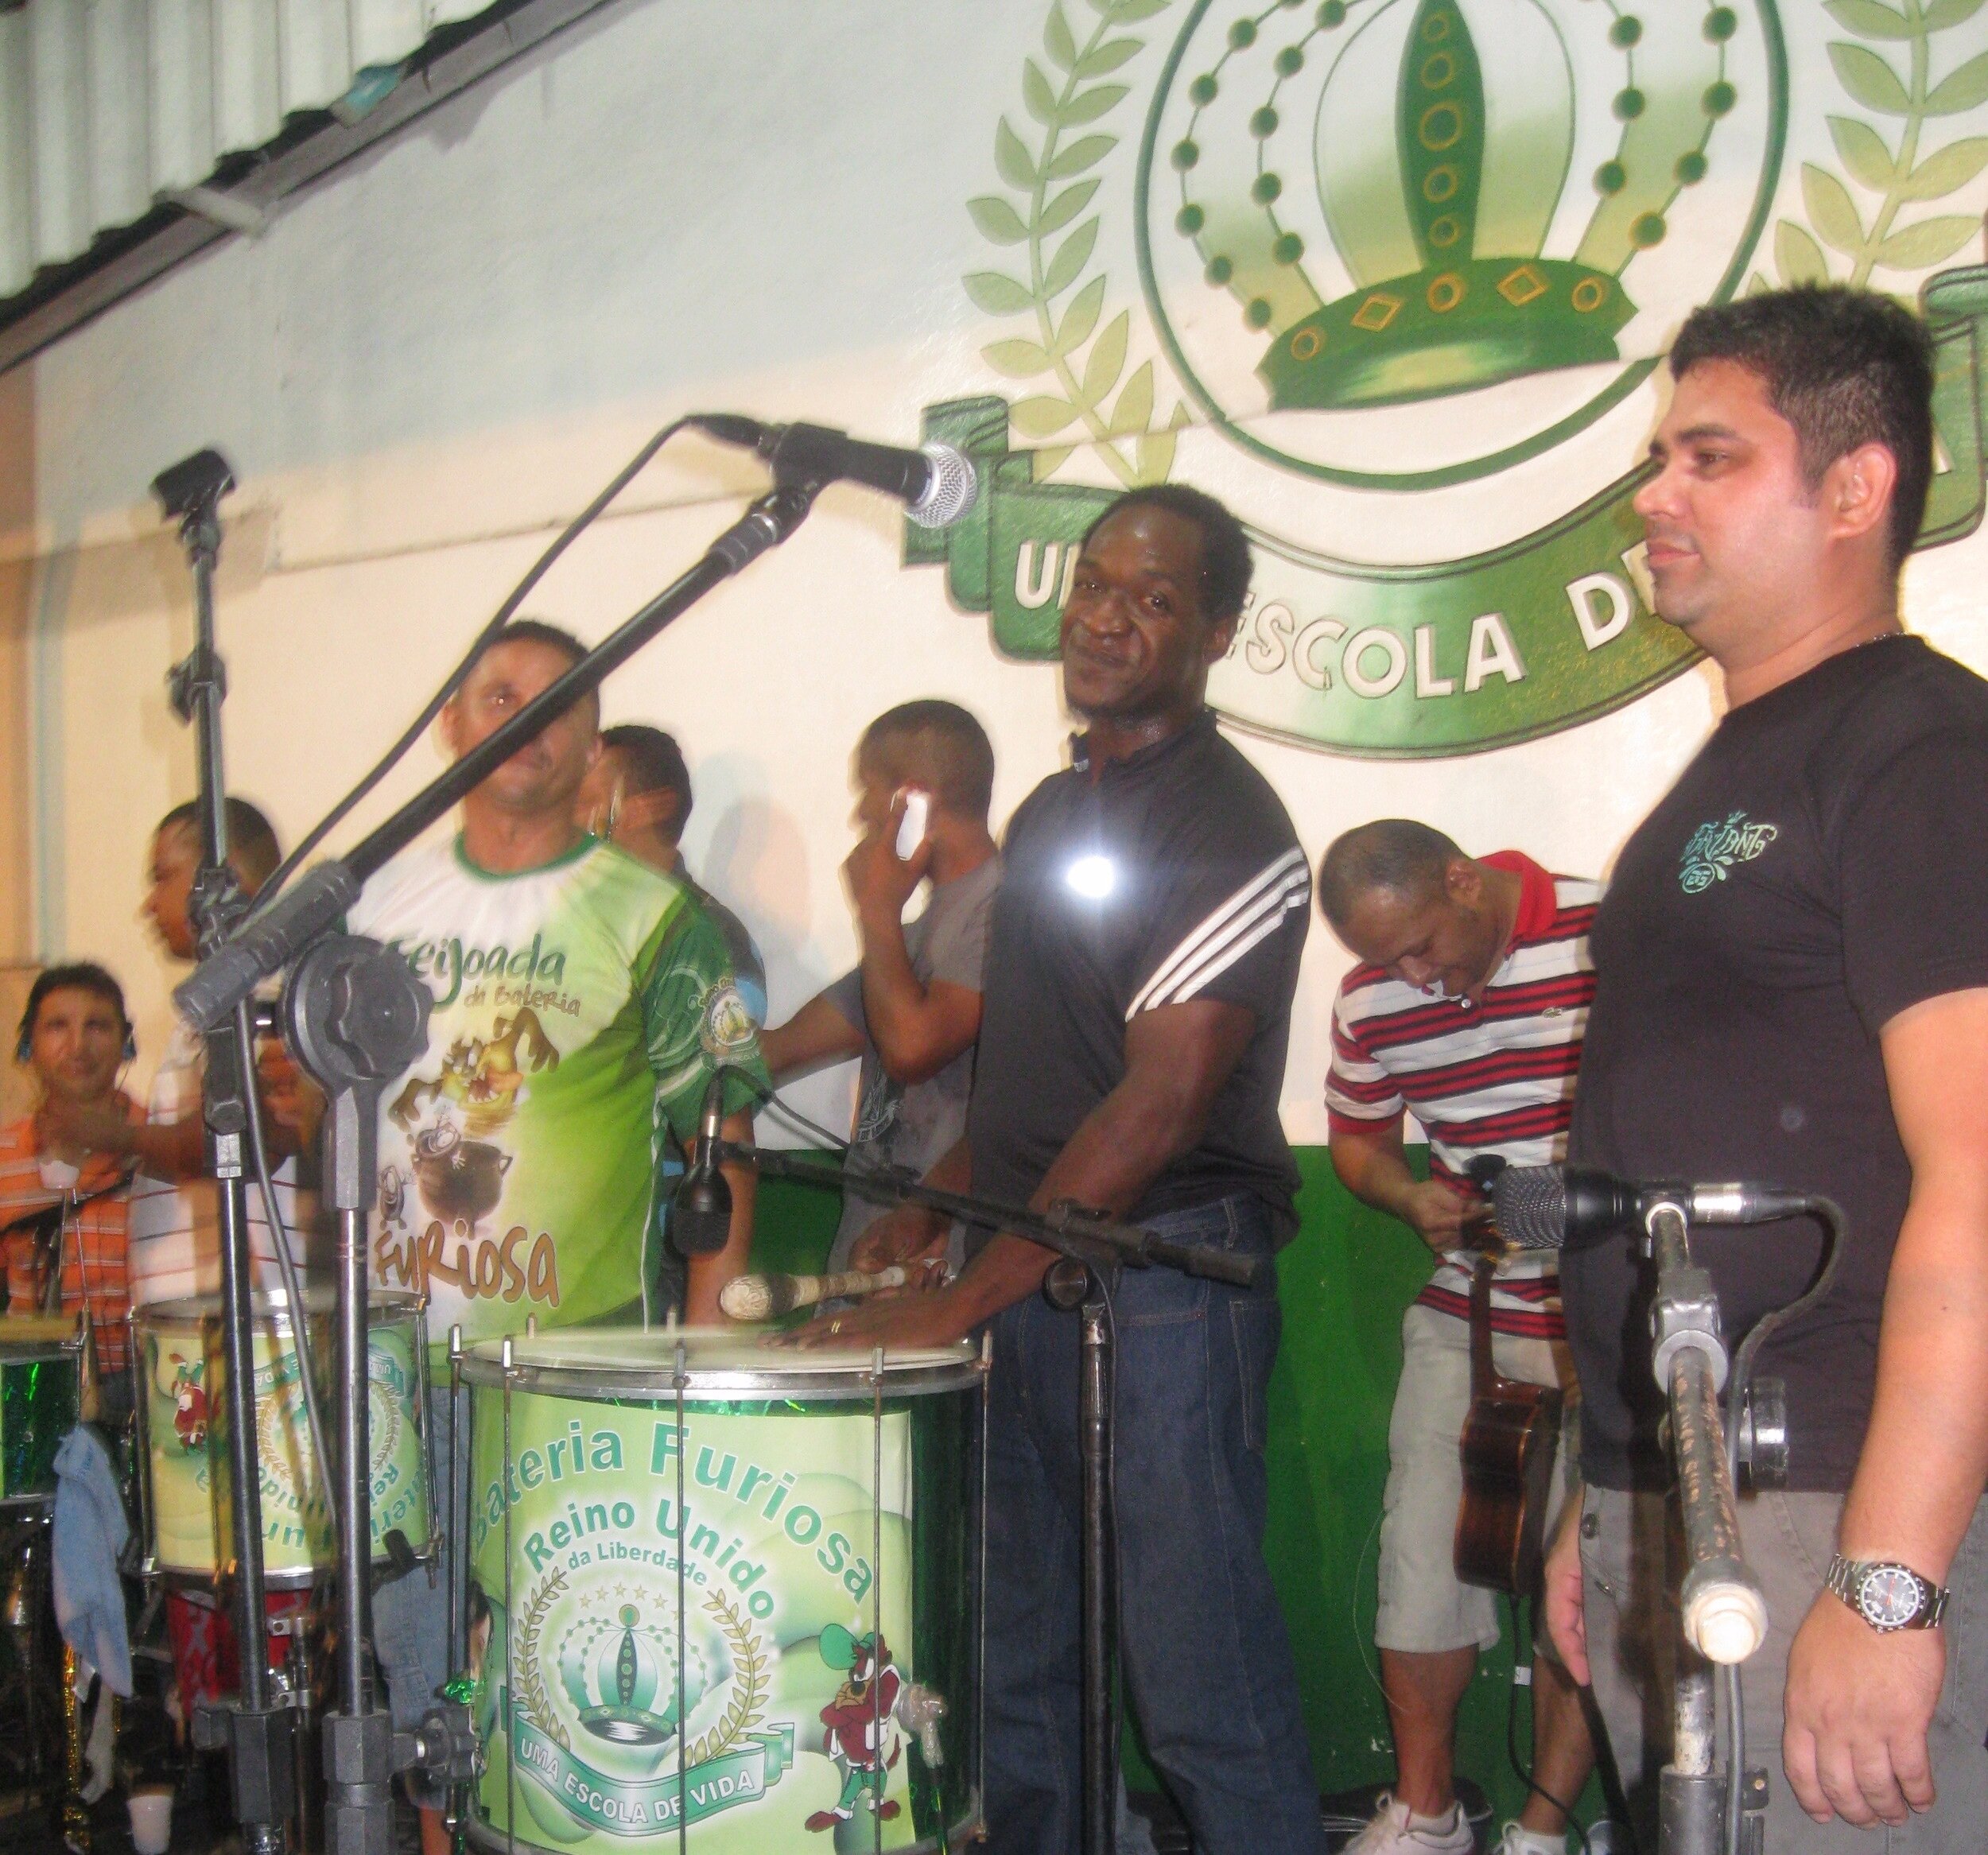 Samba party Manaus, Brazil 2011